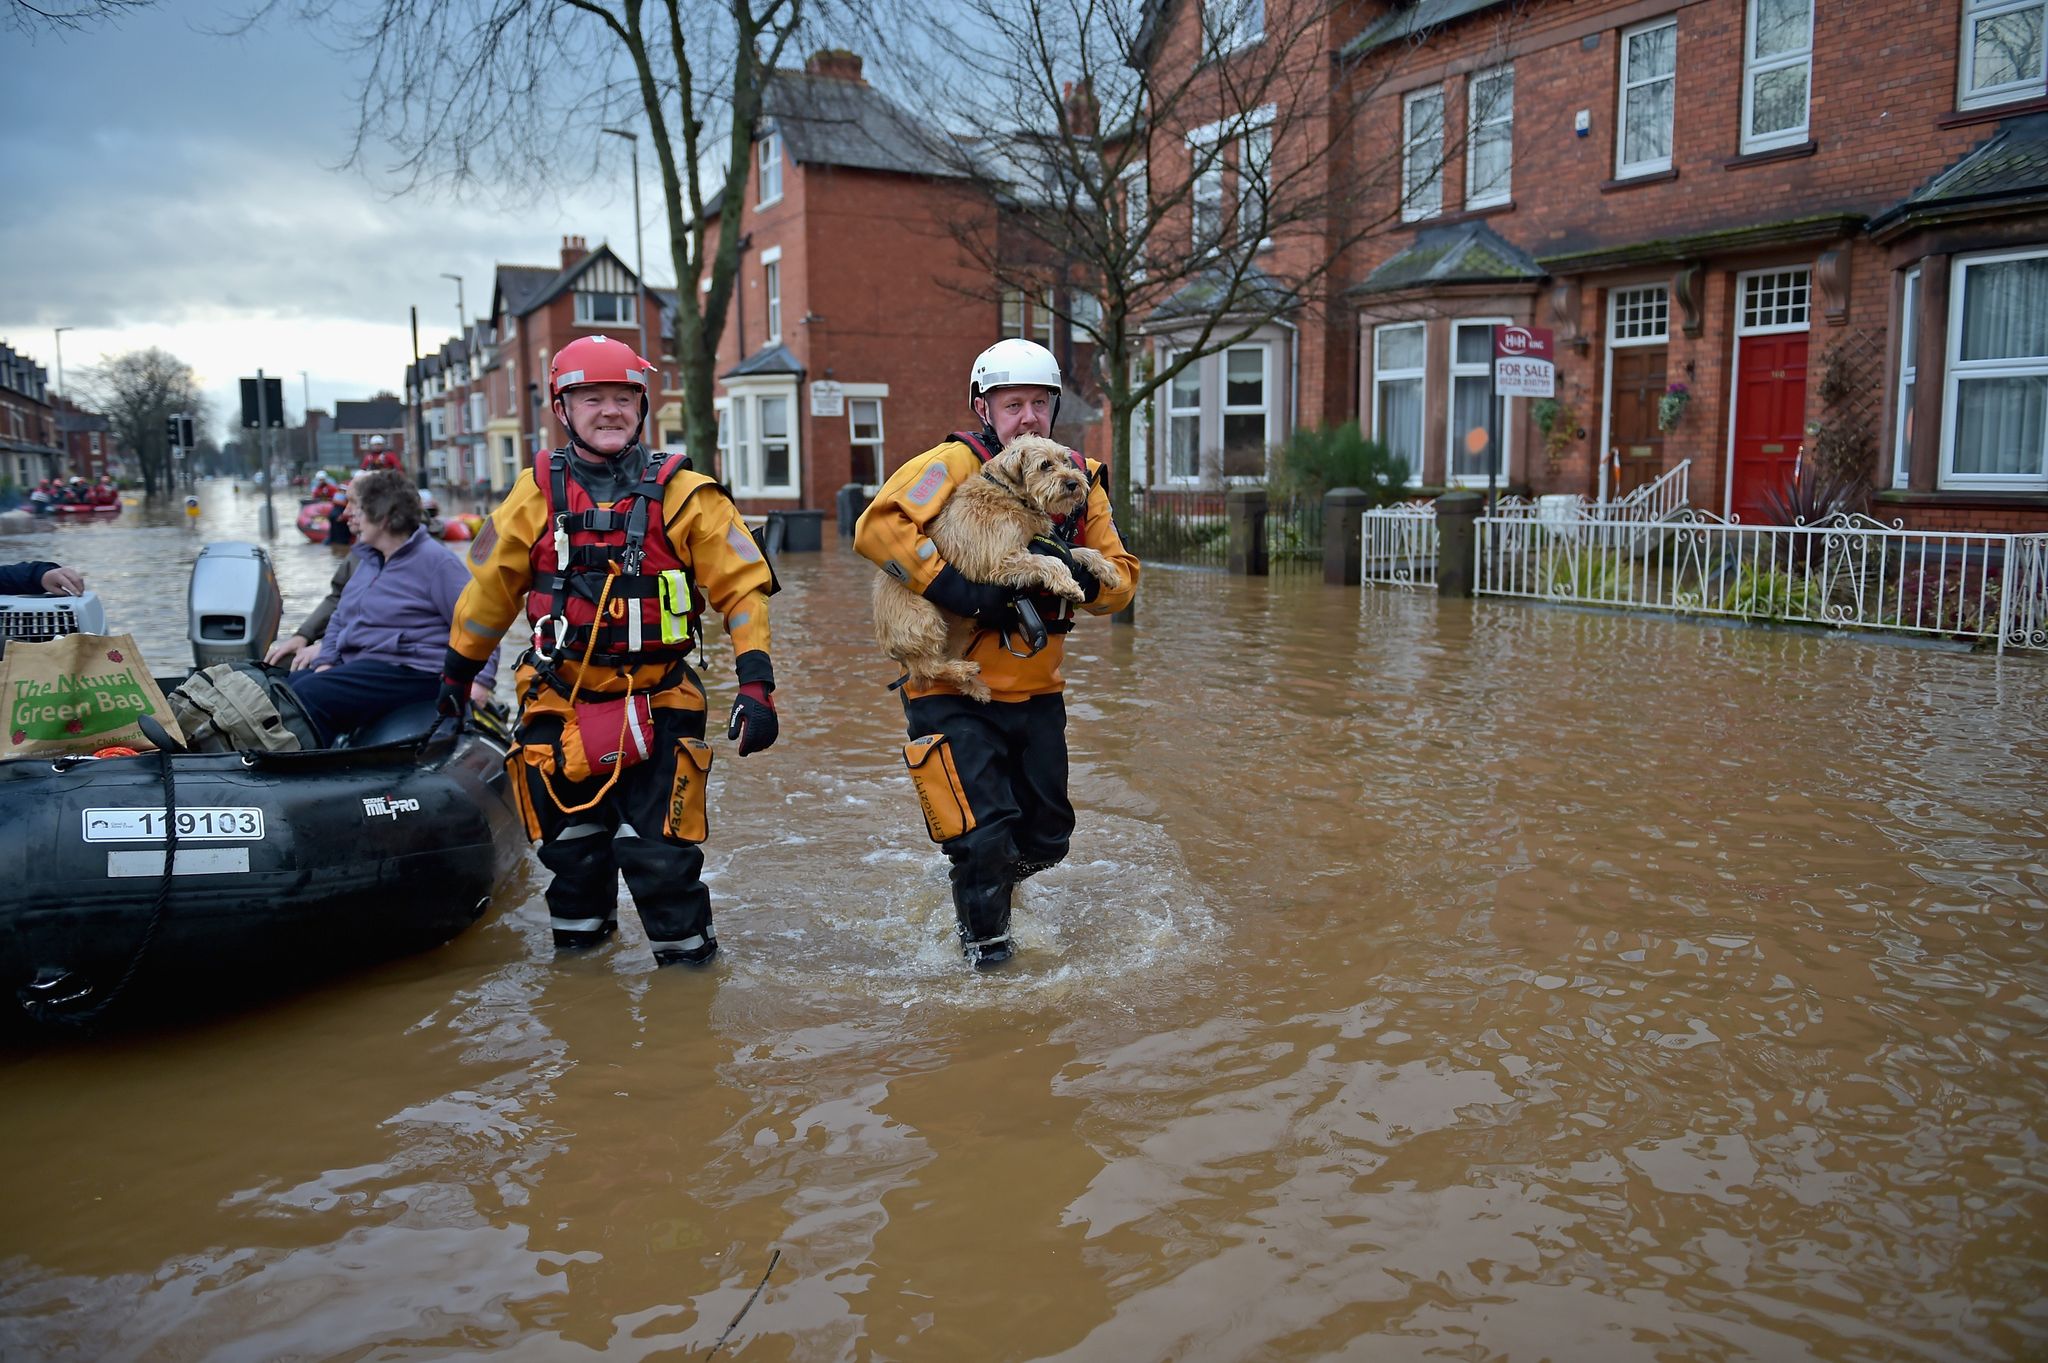 Flooding risk England